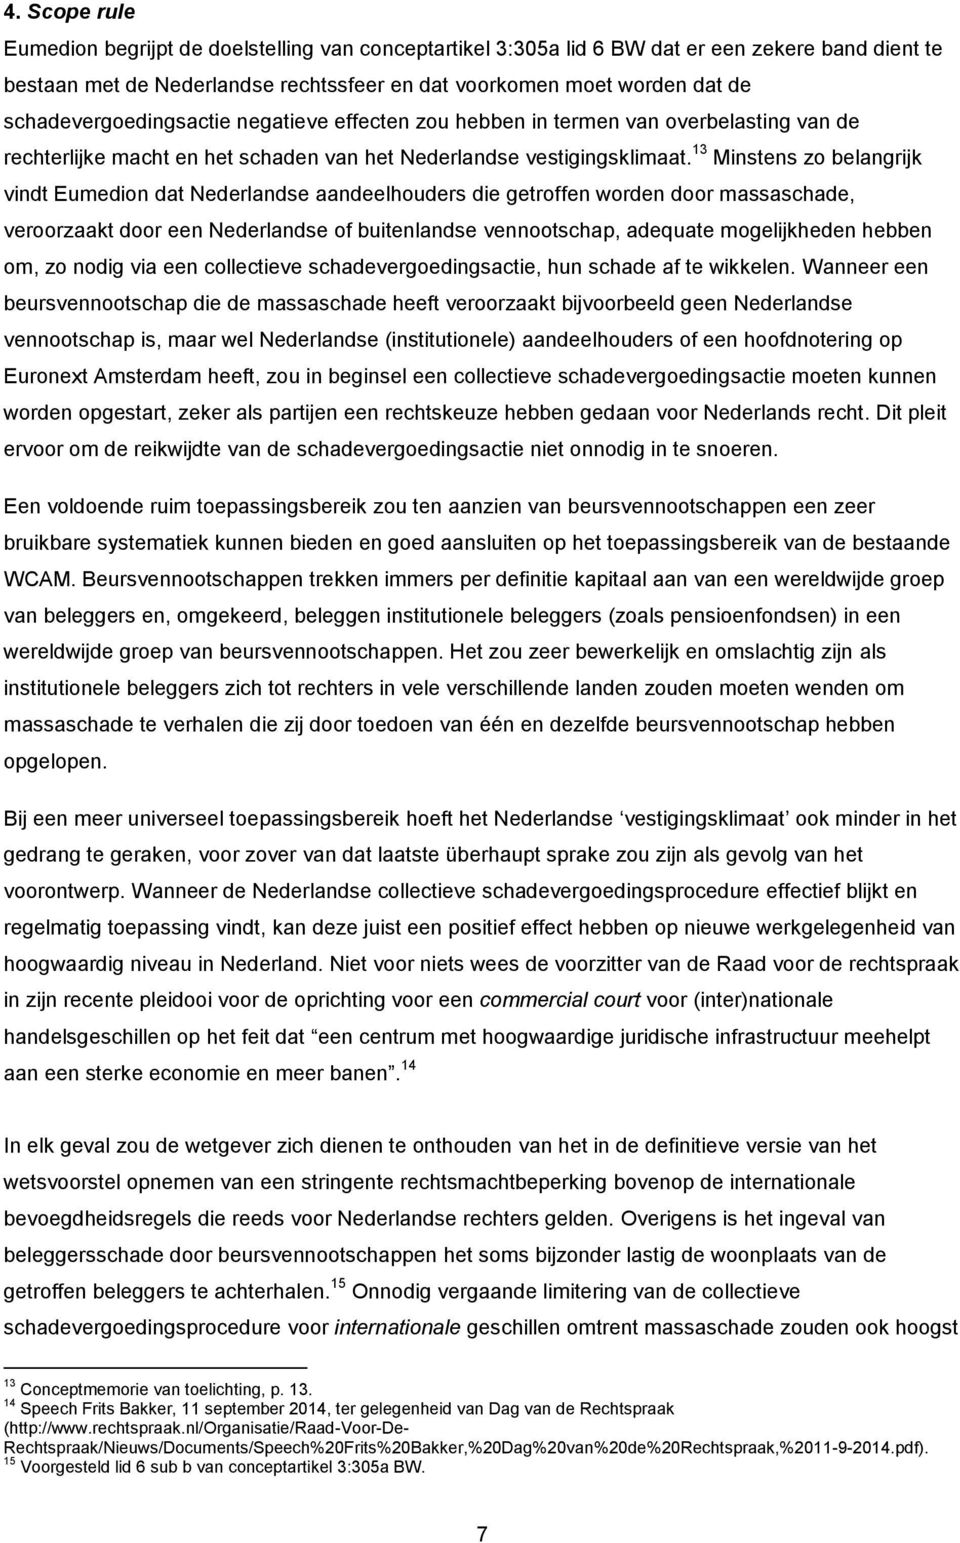 13 Minstens zo belangrijk vindt Eumedion dat Nederlandse aandeelhouders die getroffen worden door massaschade, veroorzaakt door een Nederlandse of buitenlandse vennootschap, adequate mogelijkheden